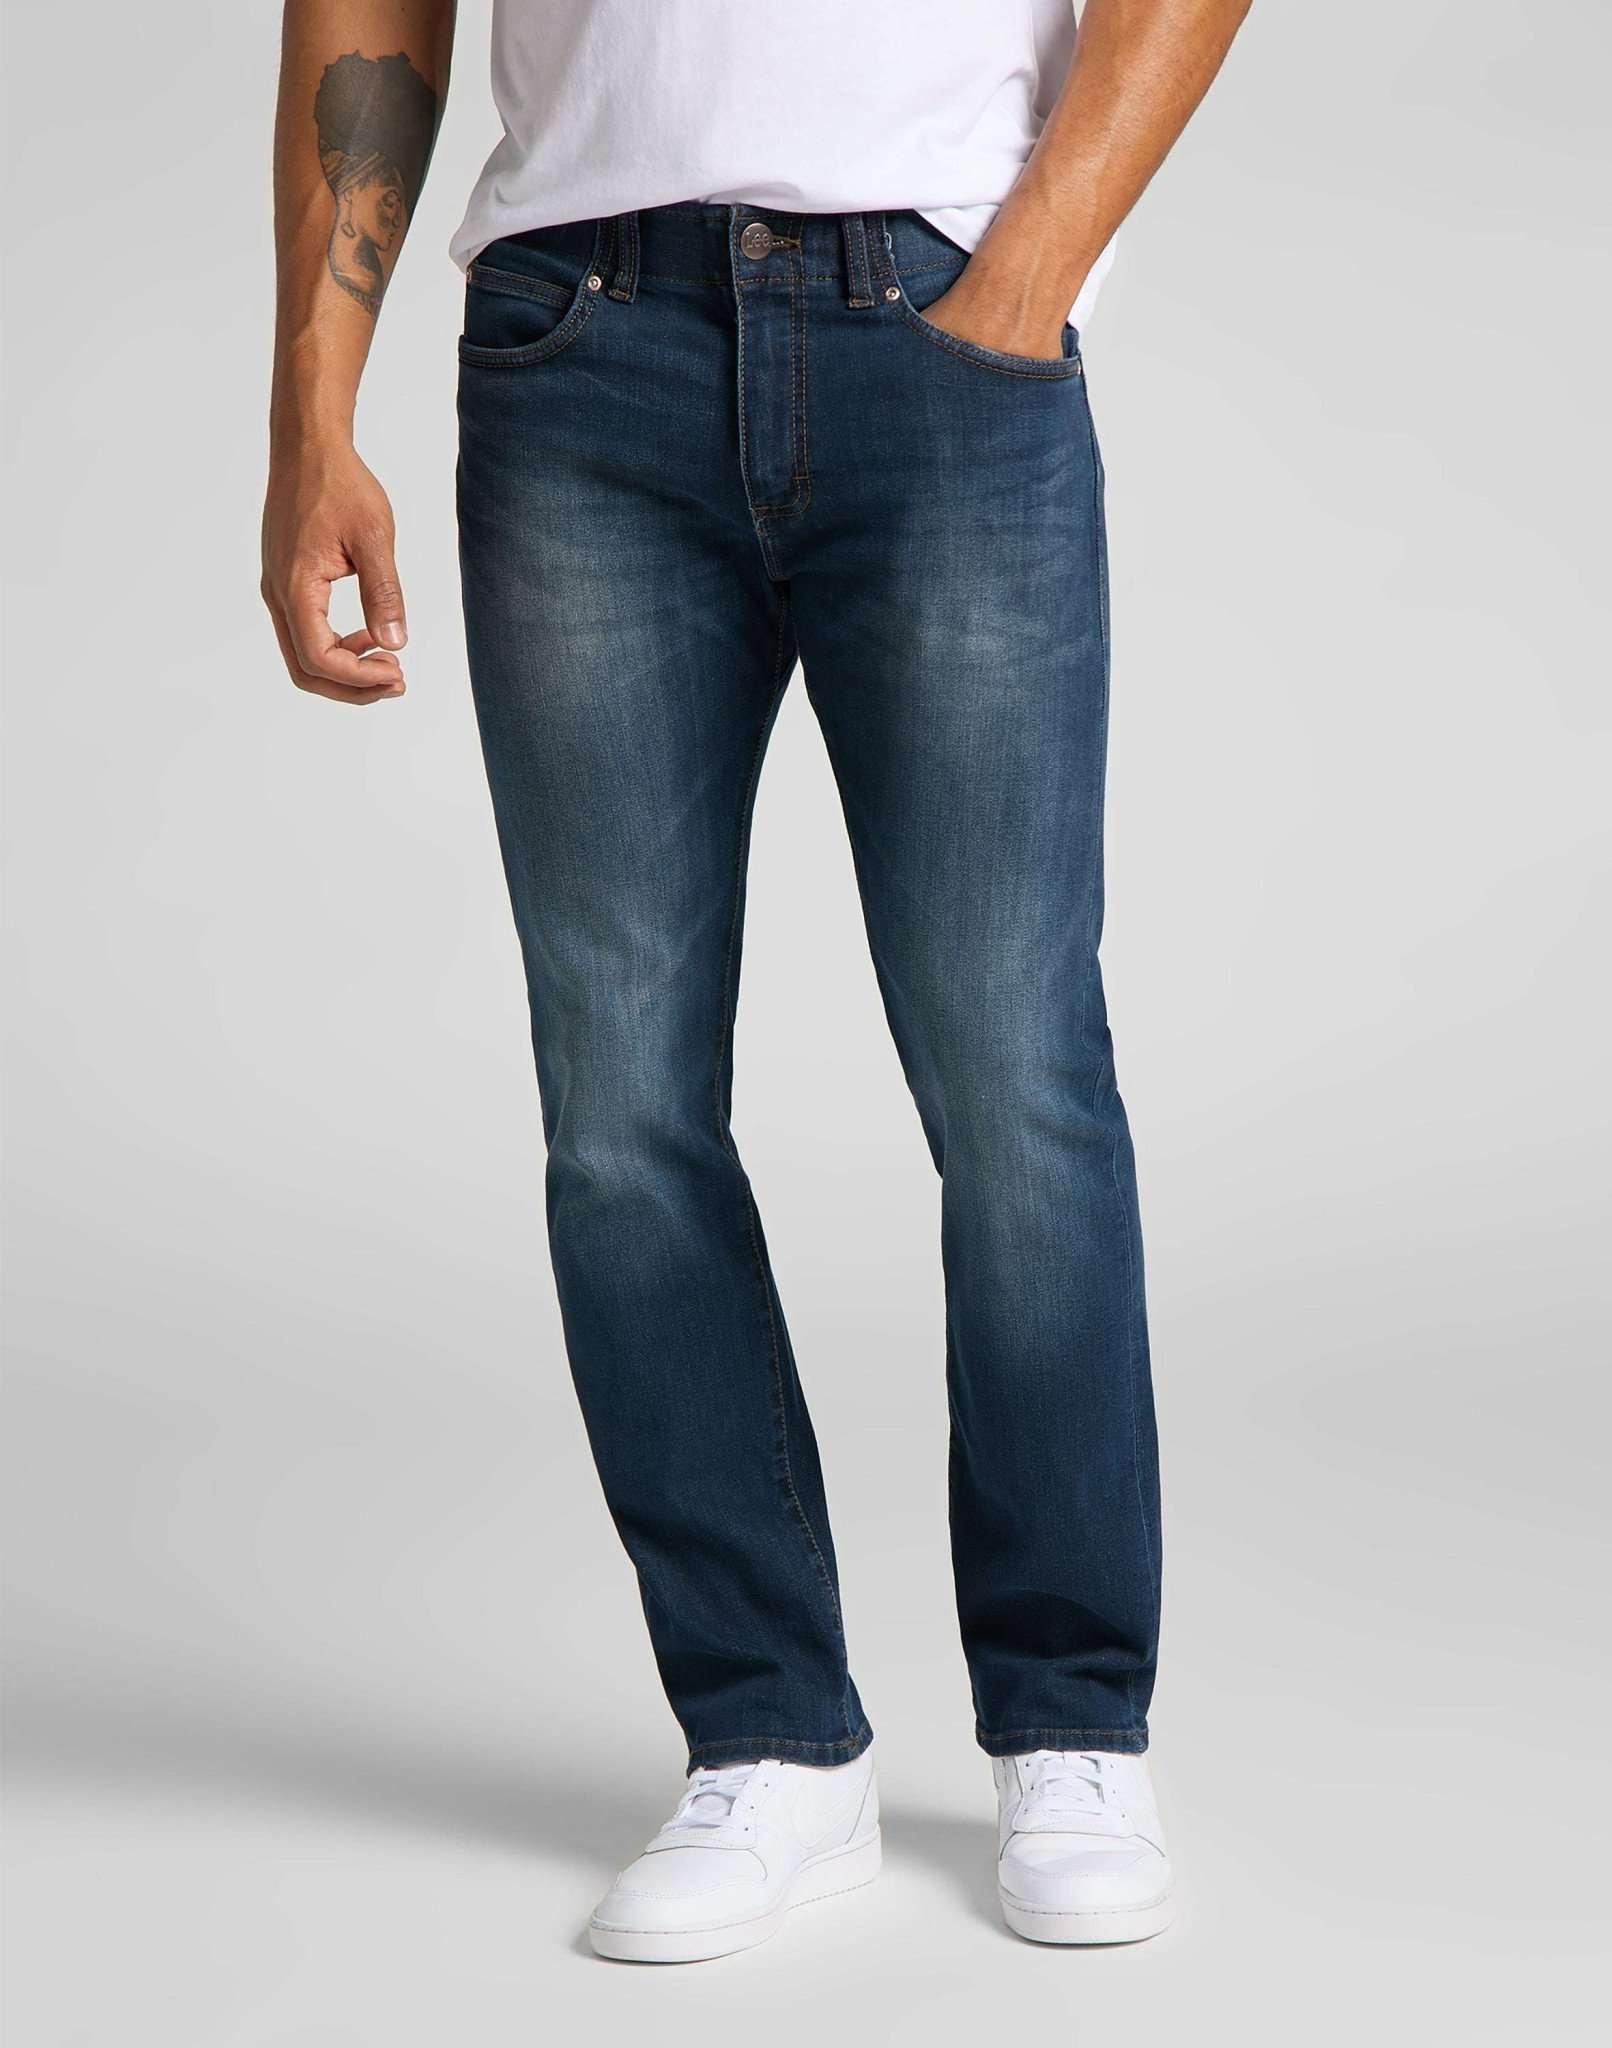 Jeans Slim Fit Mvp Herren Blau Denim L32/W33 von Lee